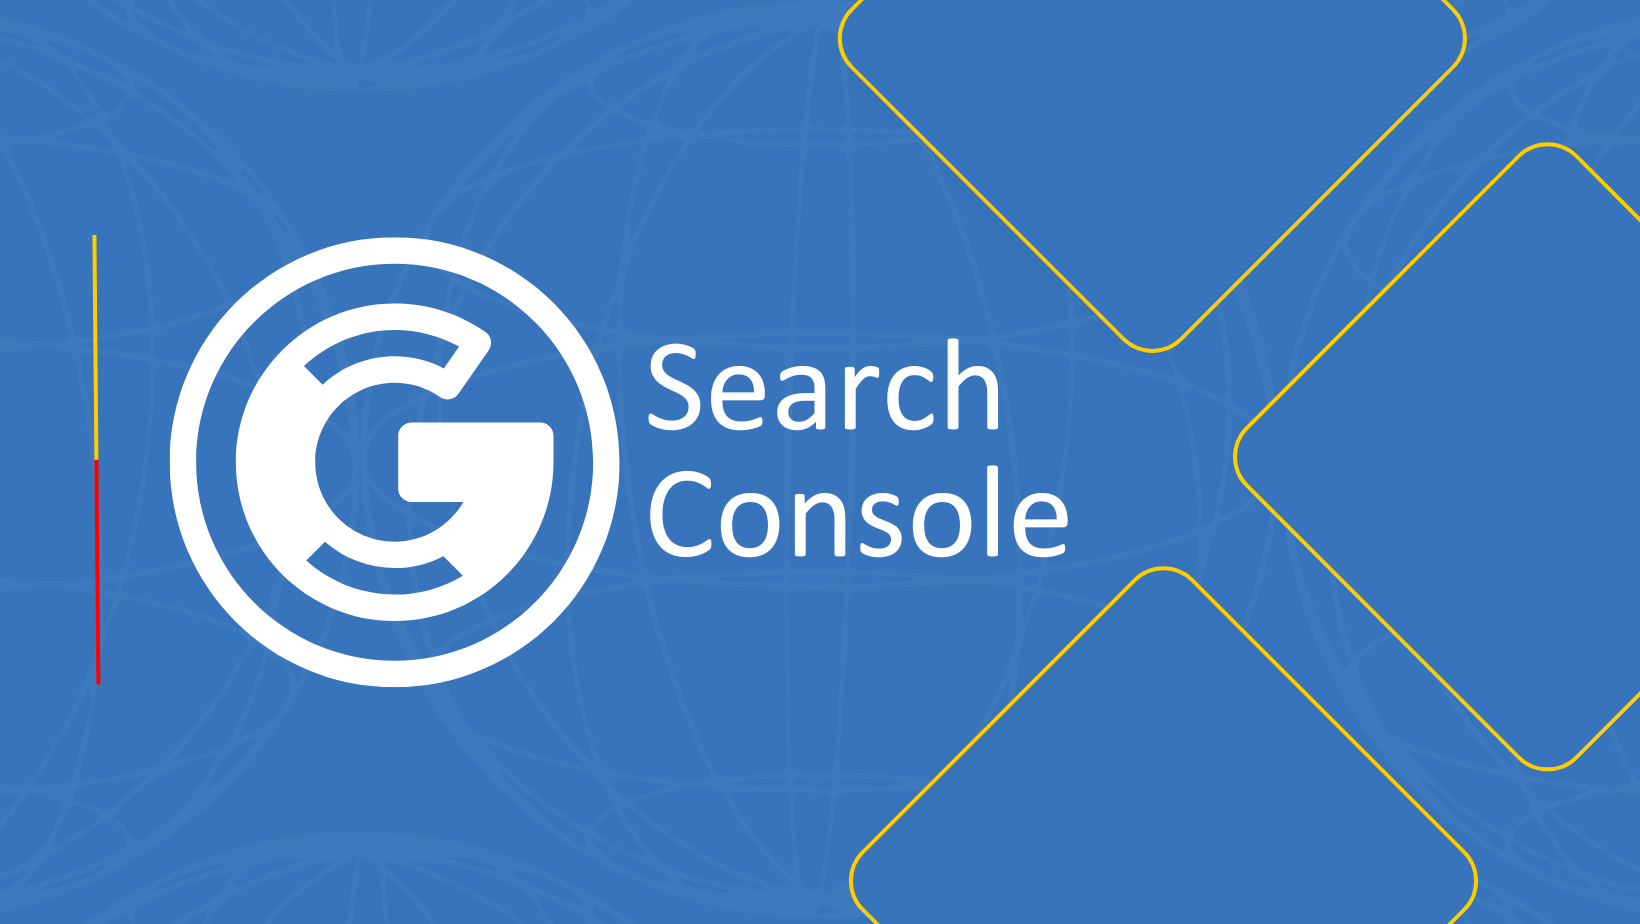 O que é o Search Console?